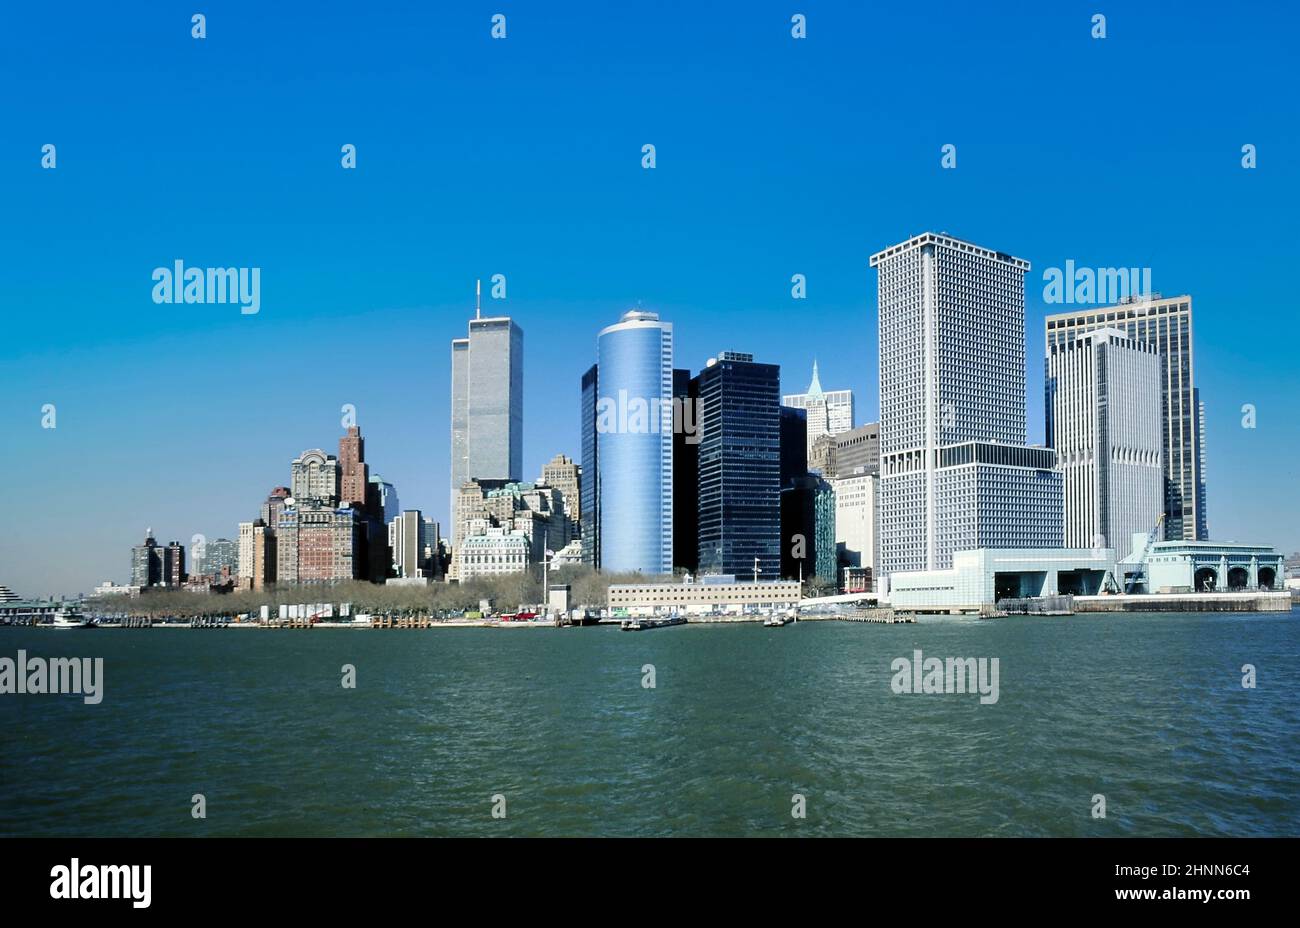 New York, USA - 1. Januar 2019: Blick auf die Innenstadt von Manhattan mit Skyline und World Trade Center unter klarem blauen Himmel. Stockfoto